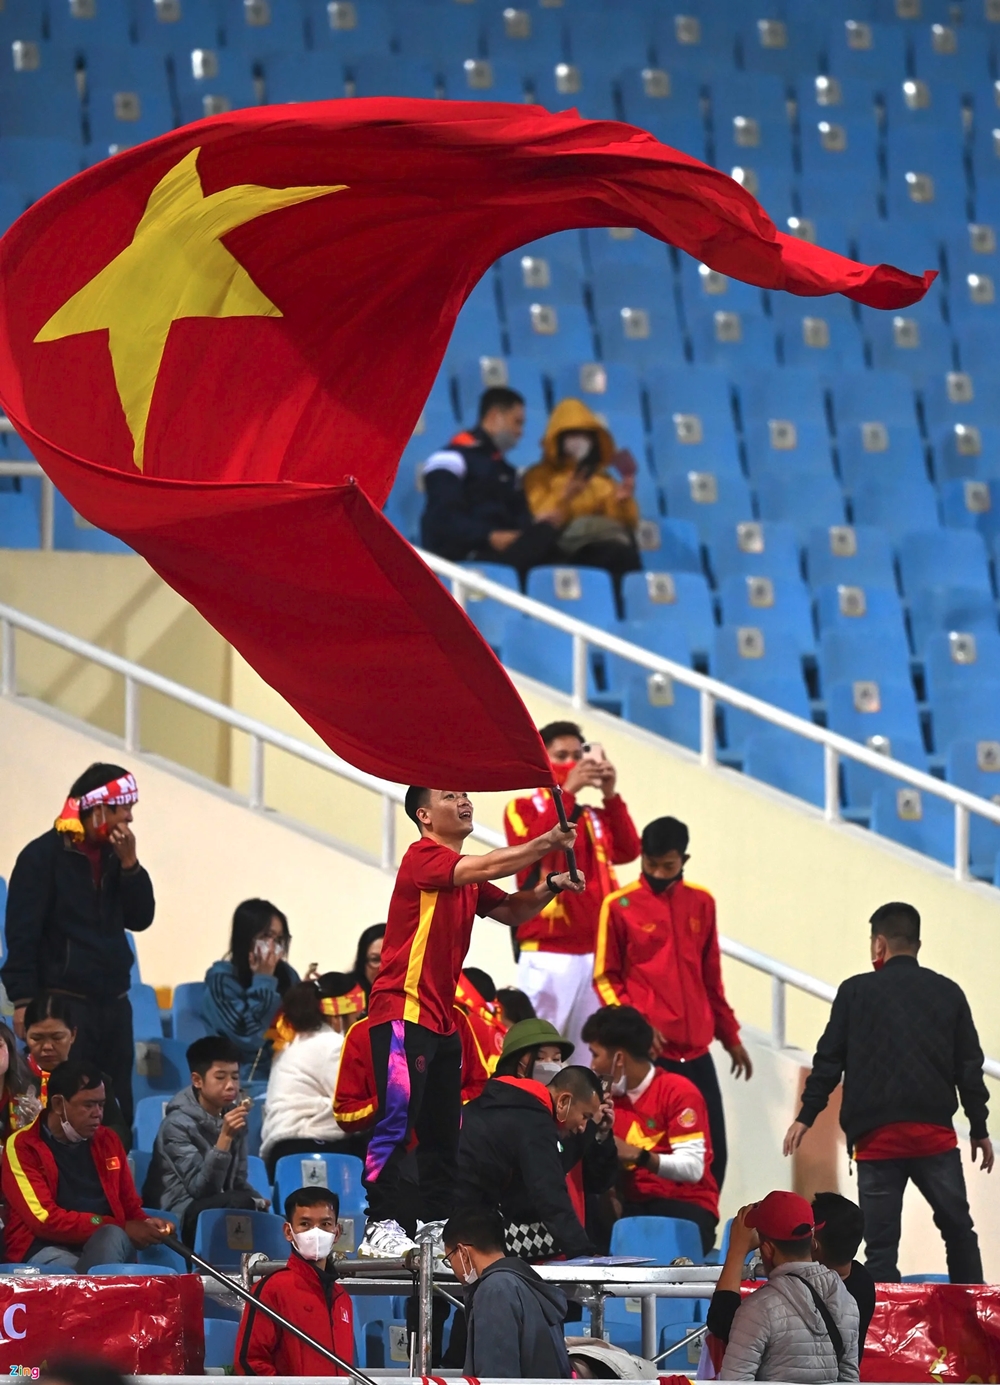 Dù là đá bóng, bóng chuyền hay các môn thể thao khác, hình ảnh các CĐV nồng cháy cổ vũ đội tuyển Việt Nam nhất định sẽ khiến bạn cảm thấy xúc động.